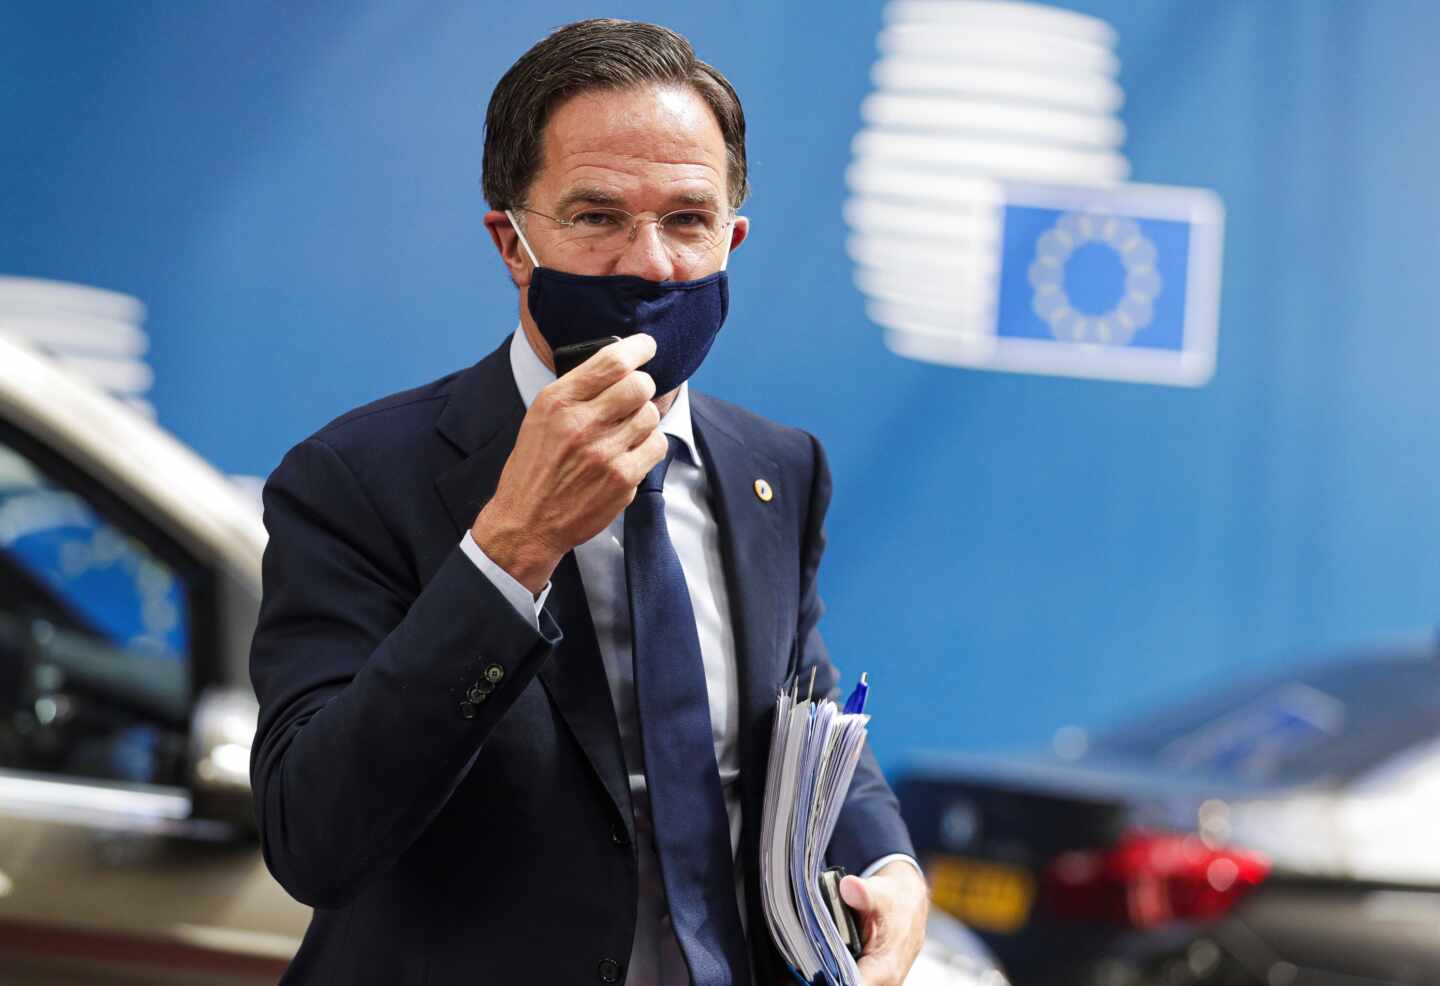 Austero, brillante y atípico: así es Mark Rutte, el nuevo villano de la UE